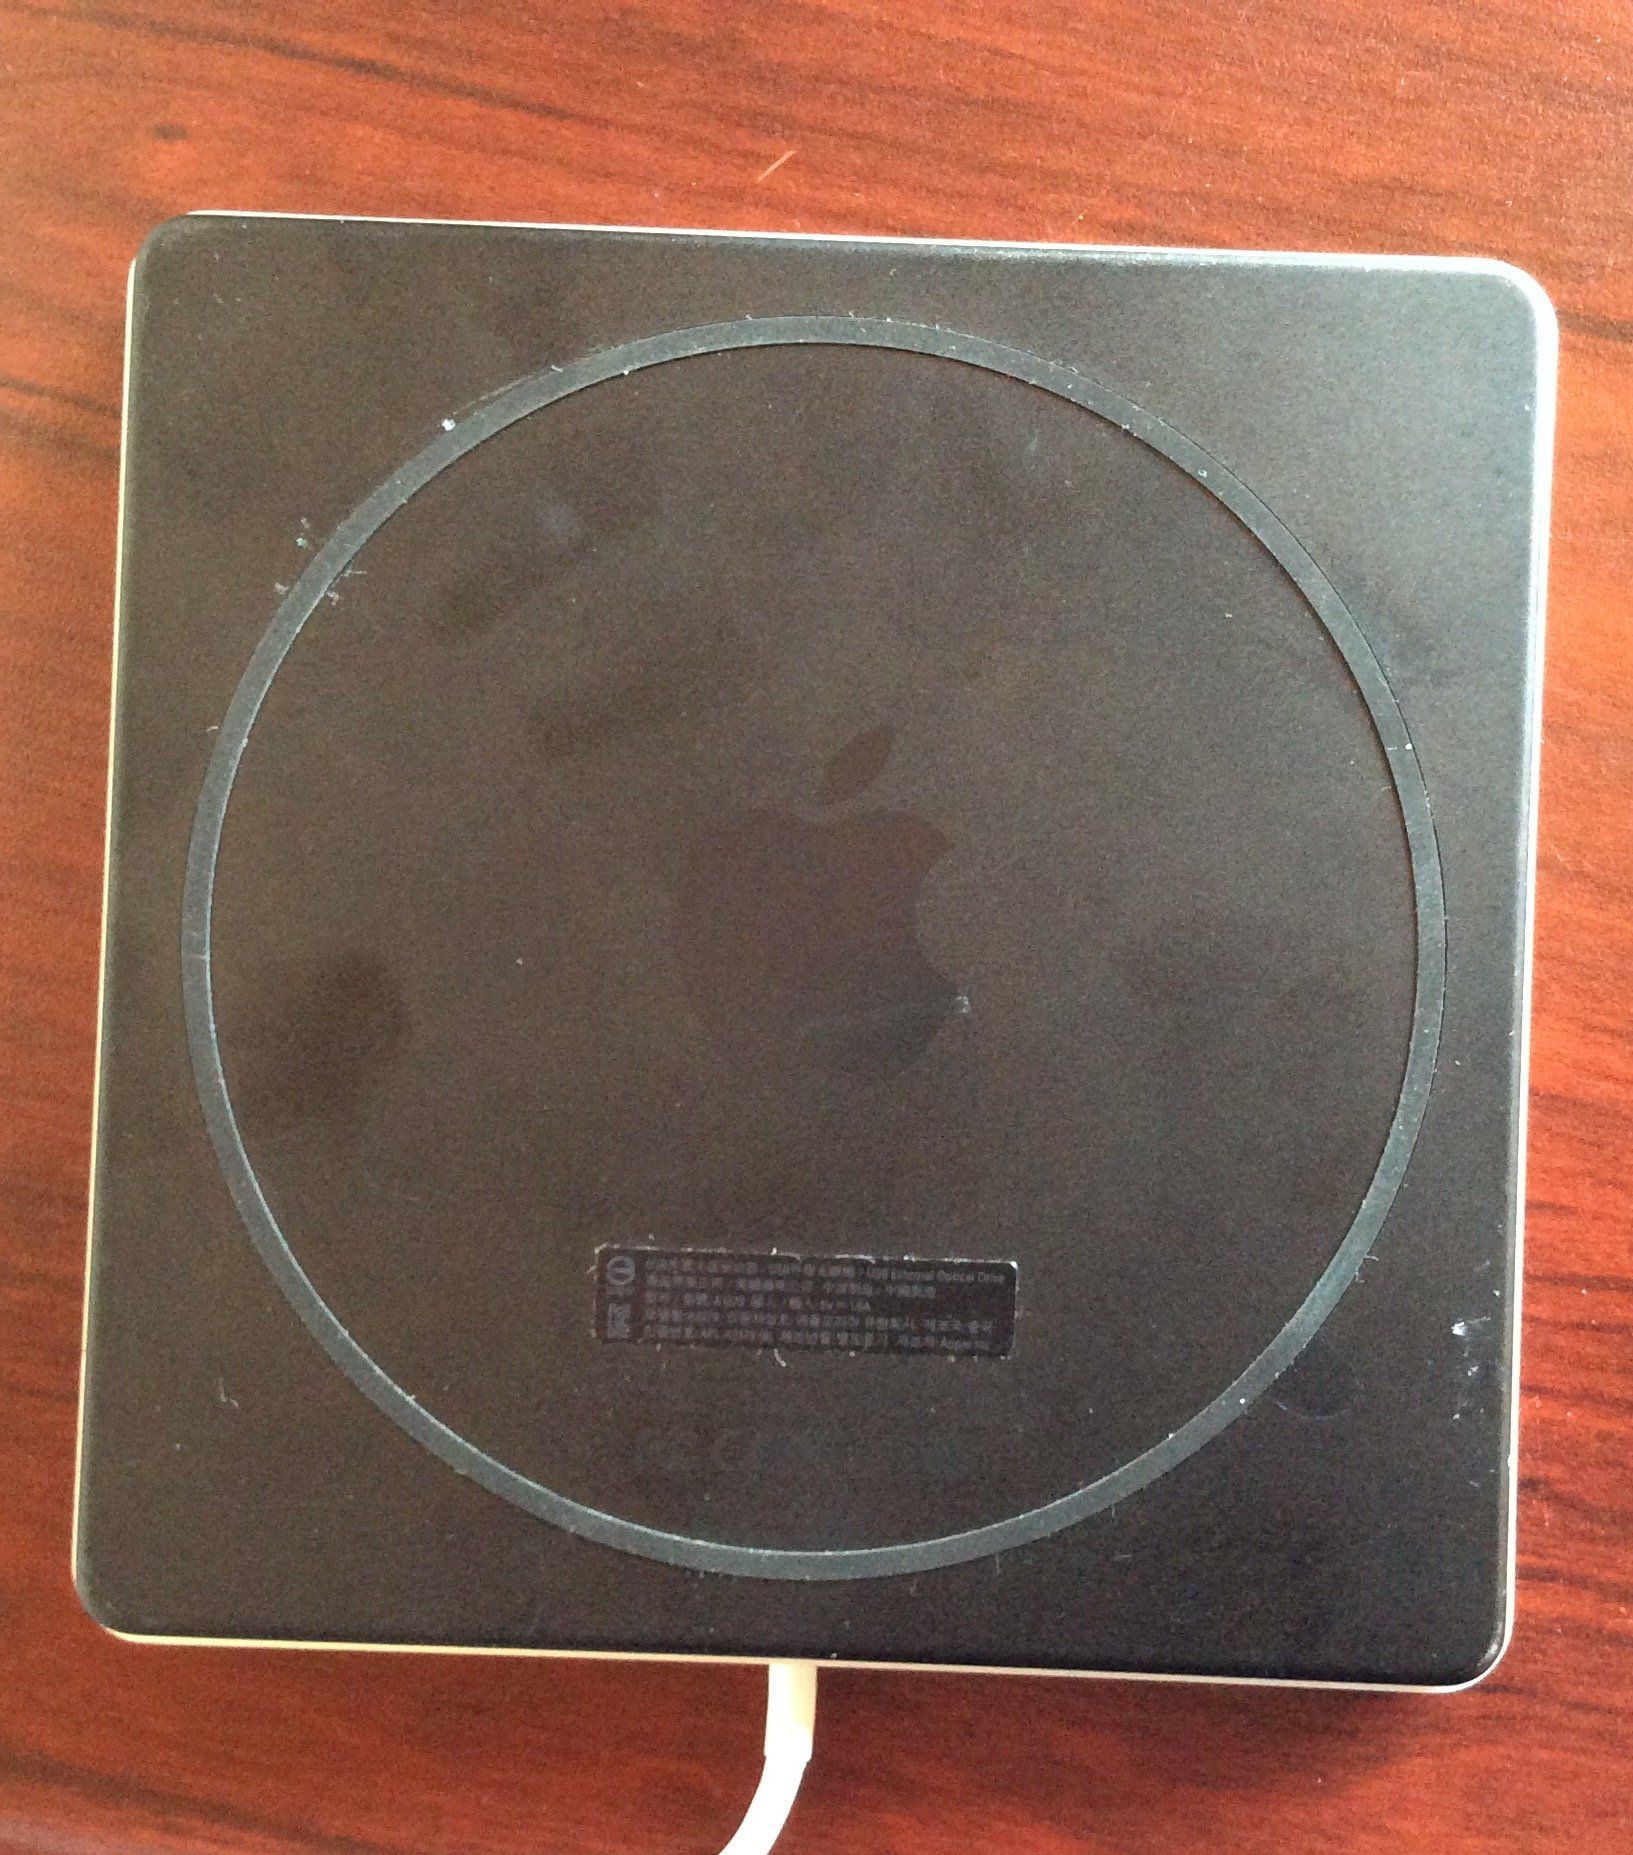 Apple external cd drive